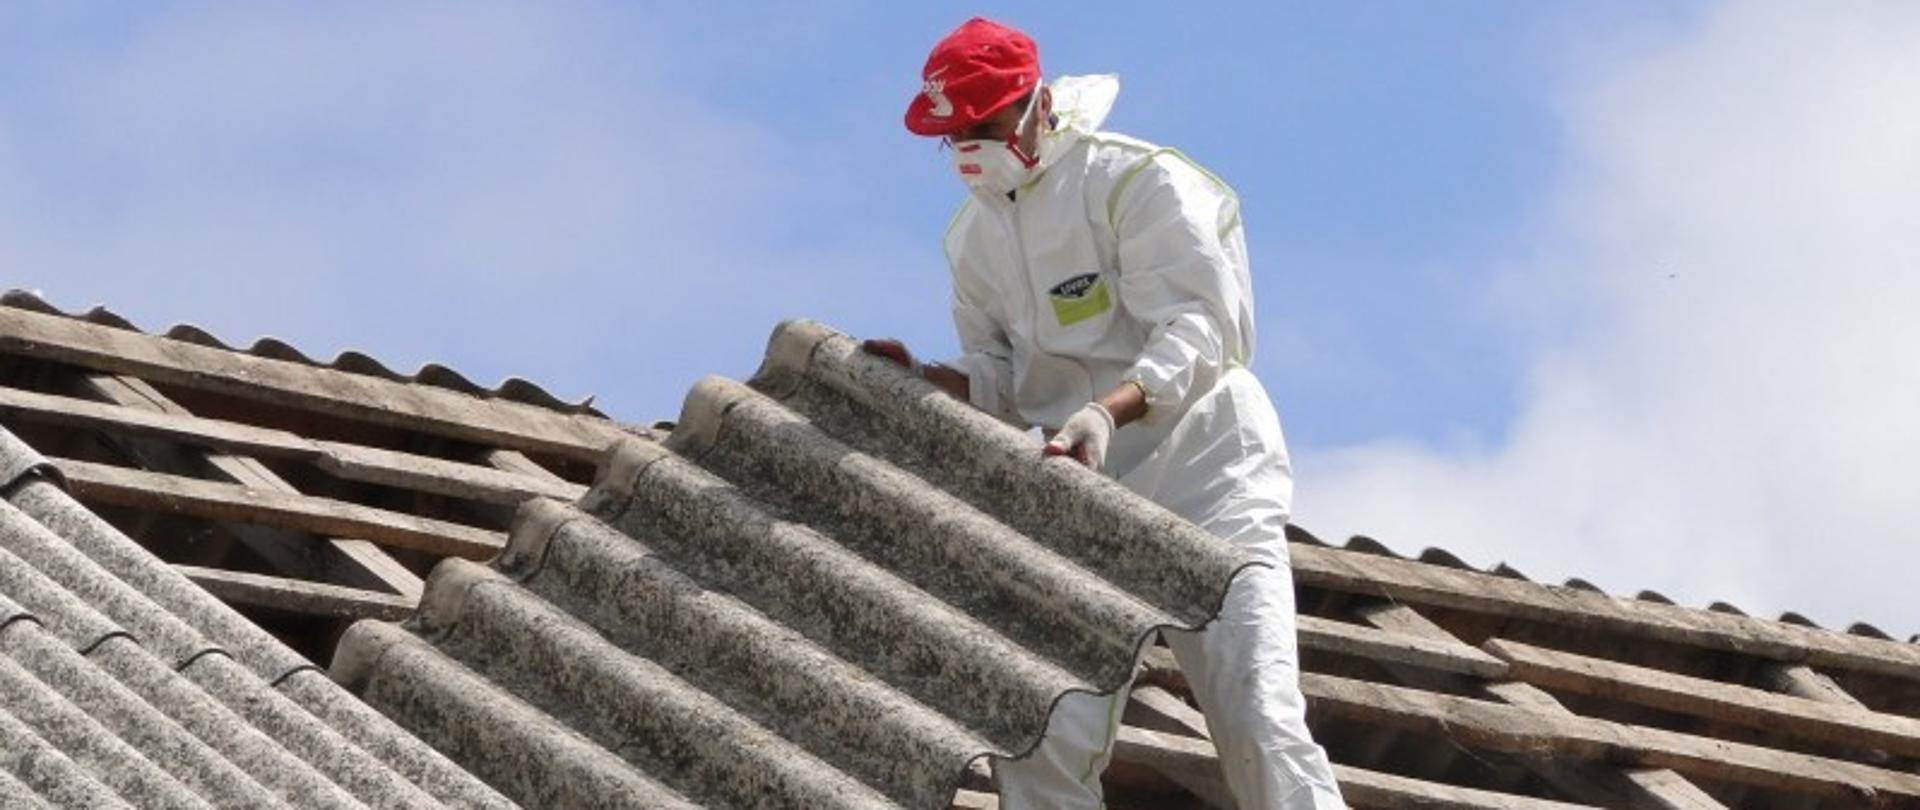 firma usuwa azbest z dachu